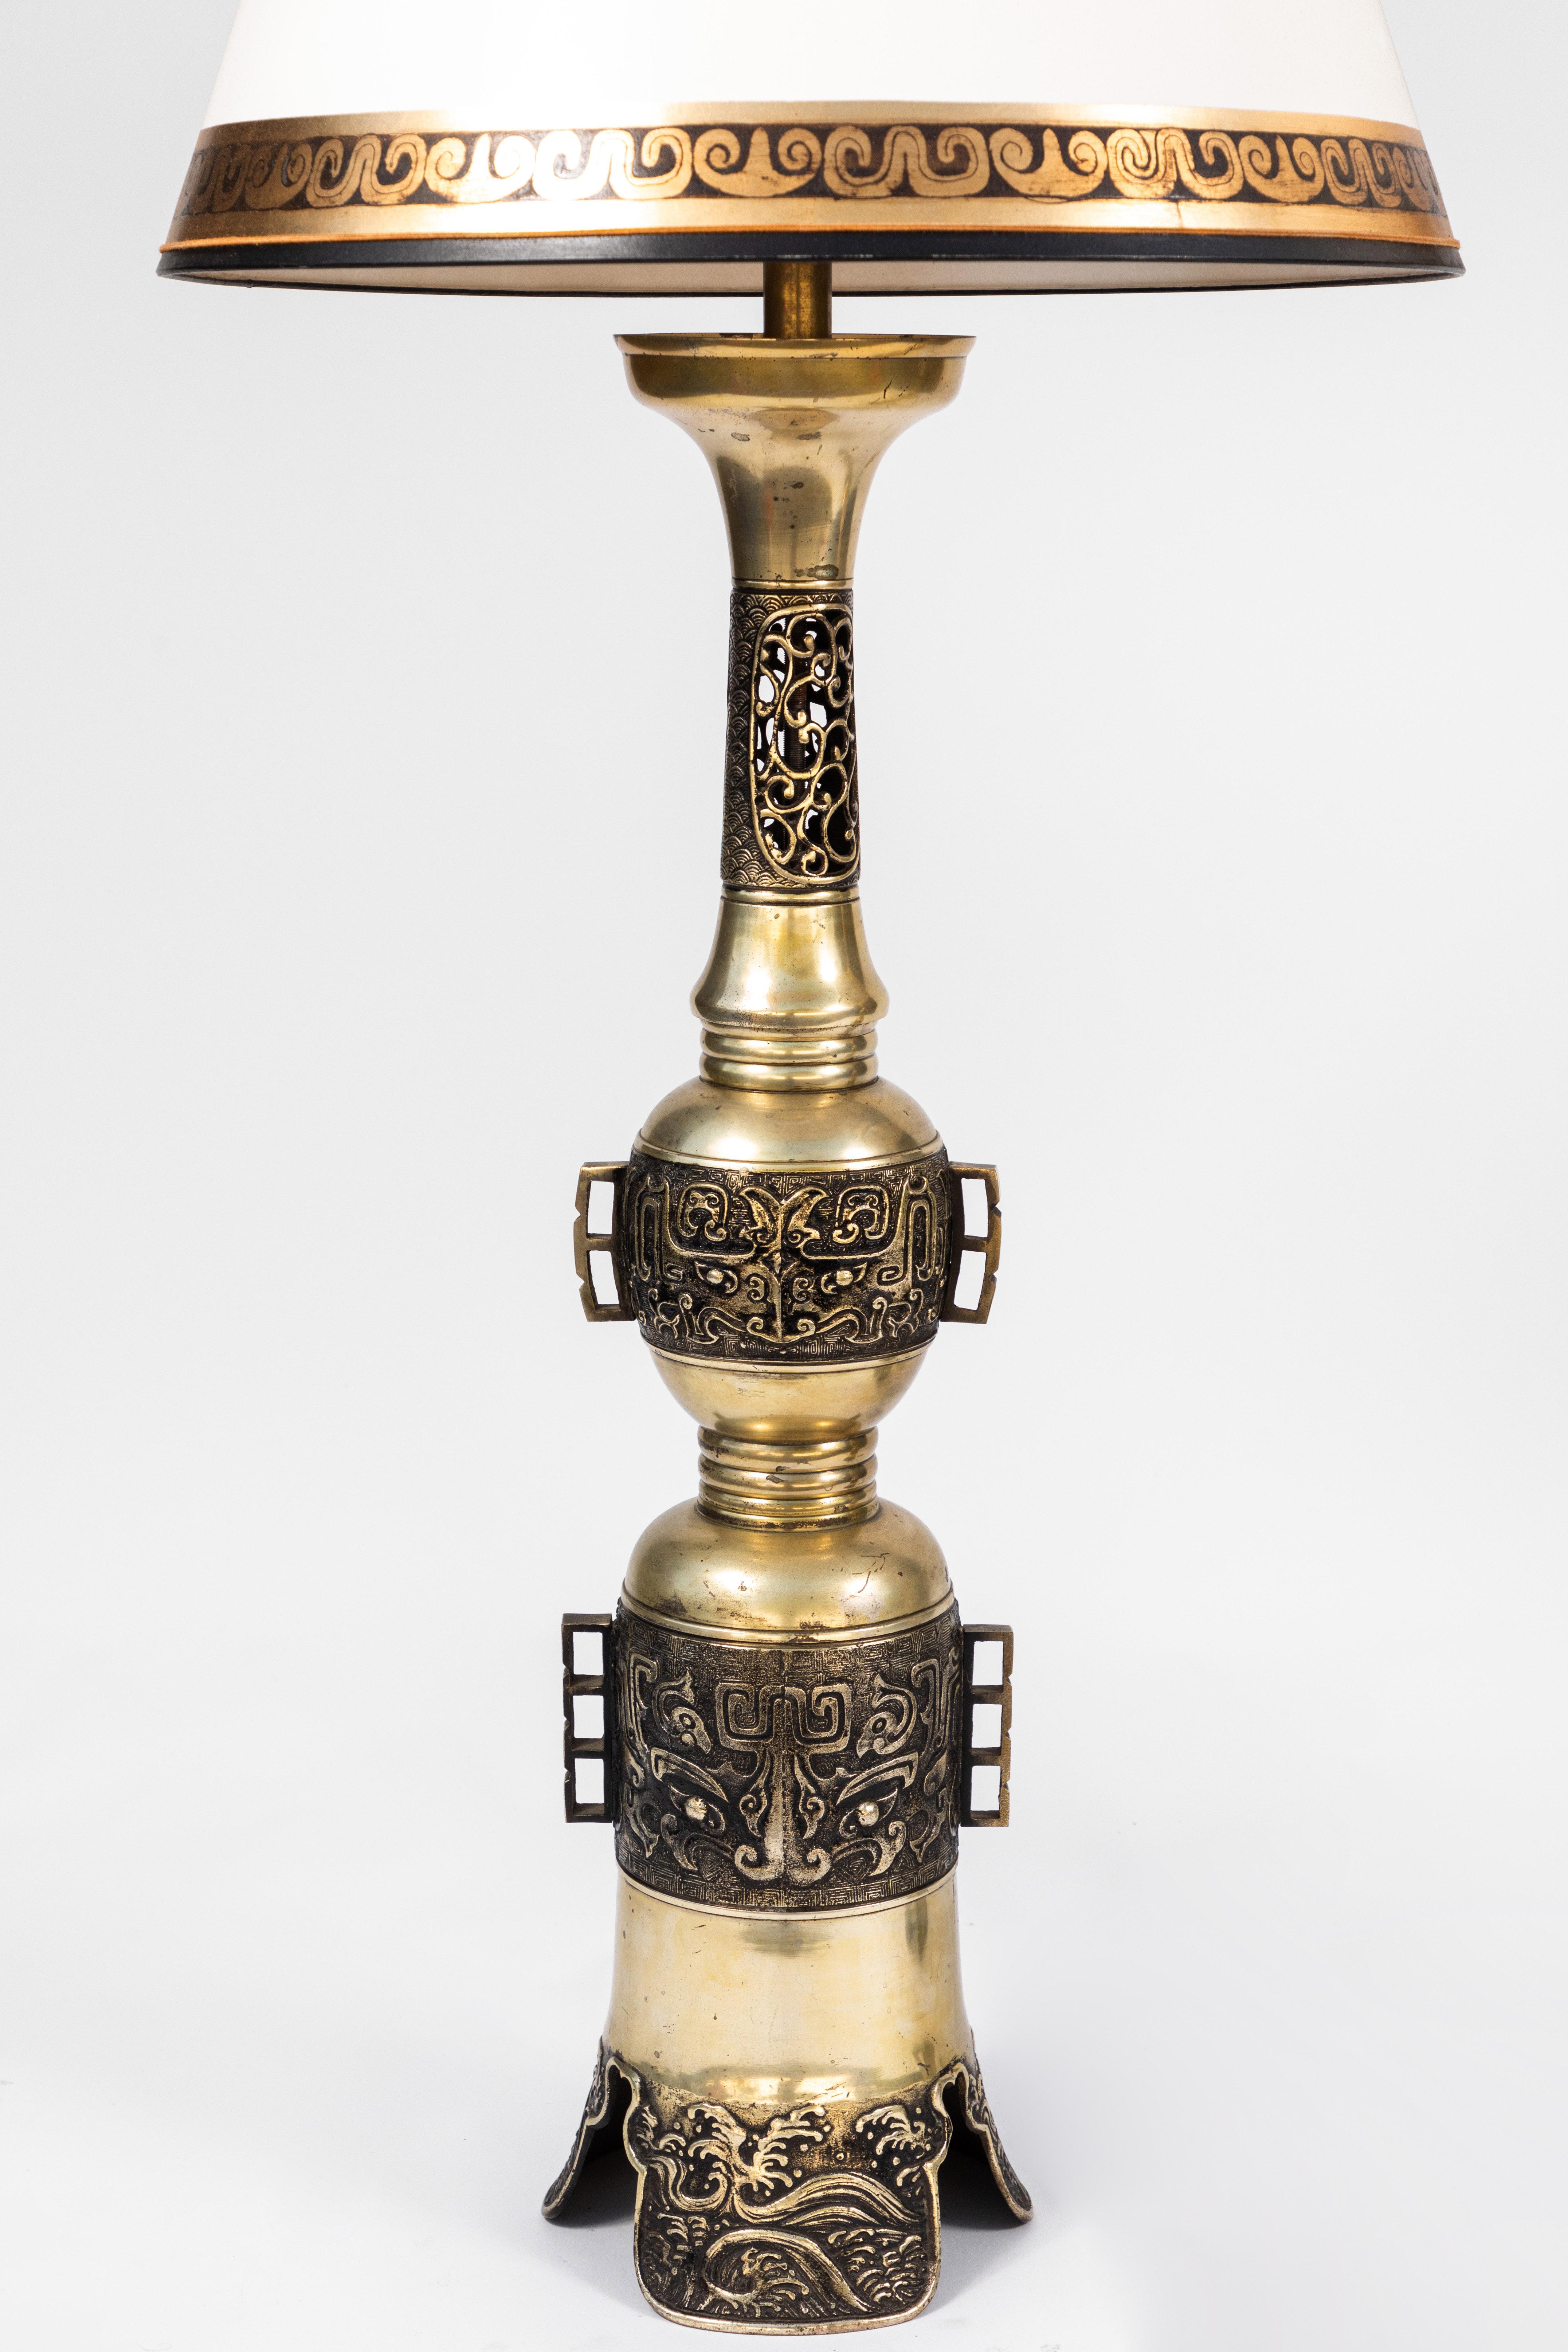 Paire de lampes d'autel en bronze chinoises du 19e siècle avec abat-jour en parchemin et détails dorés. Nouvellement reconnecté.